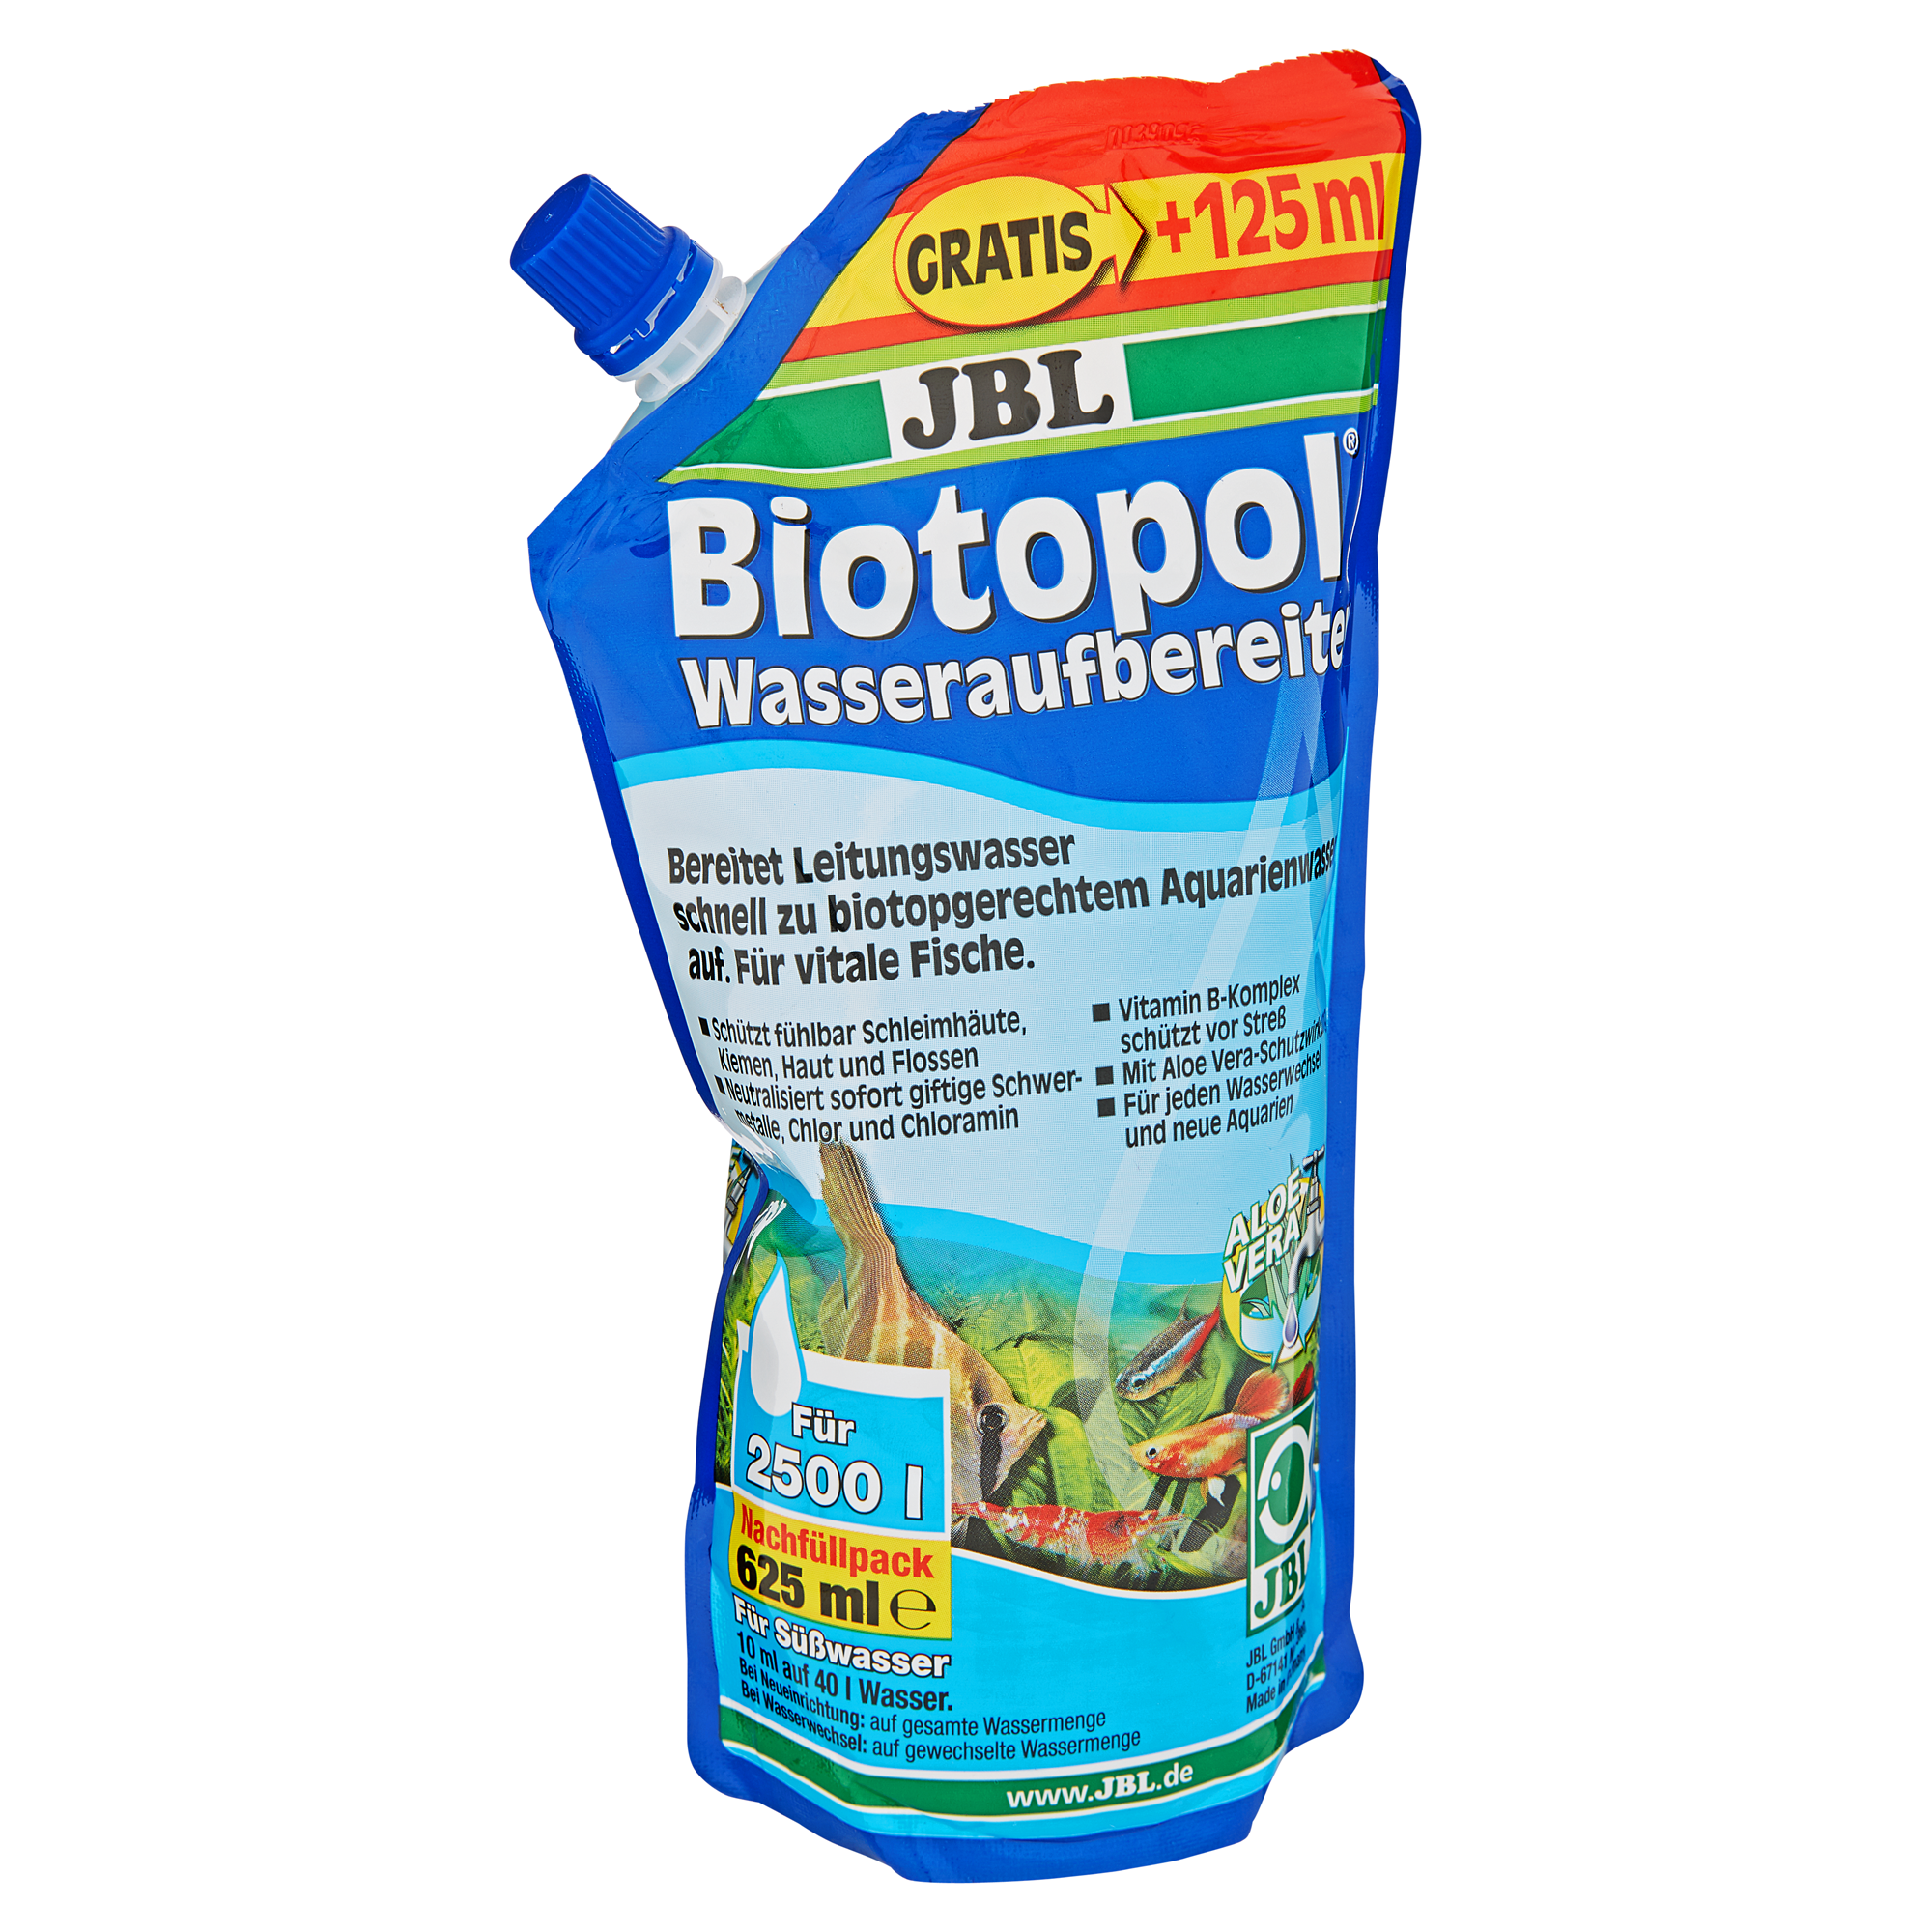 Wasseraufbereiter "Biotopol" Nachfüllpack 625 ml + product picture